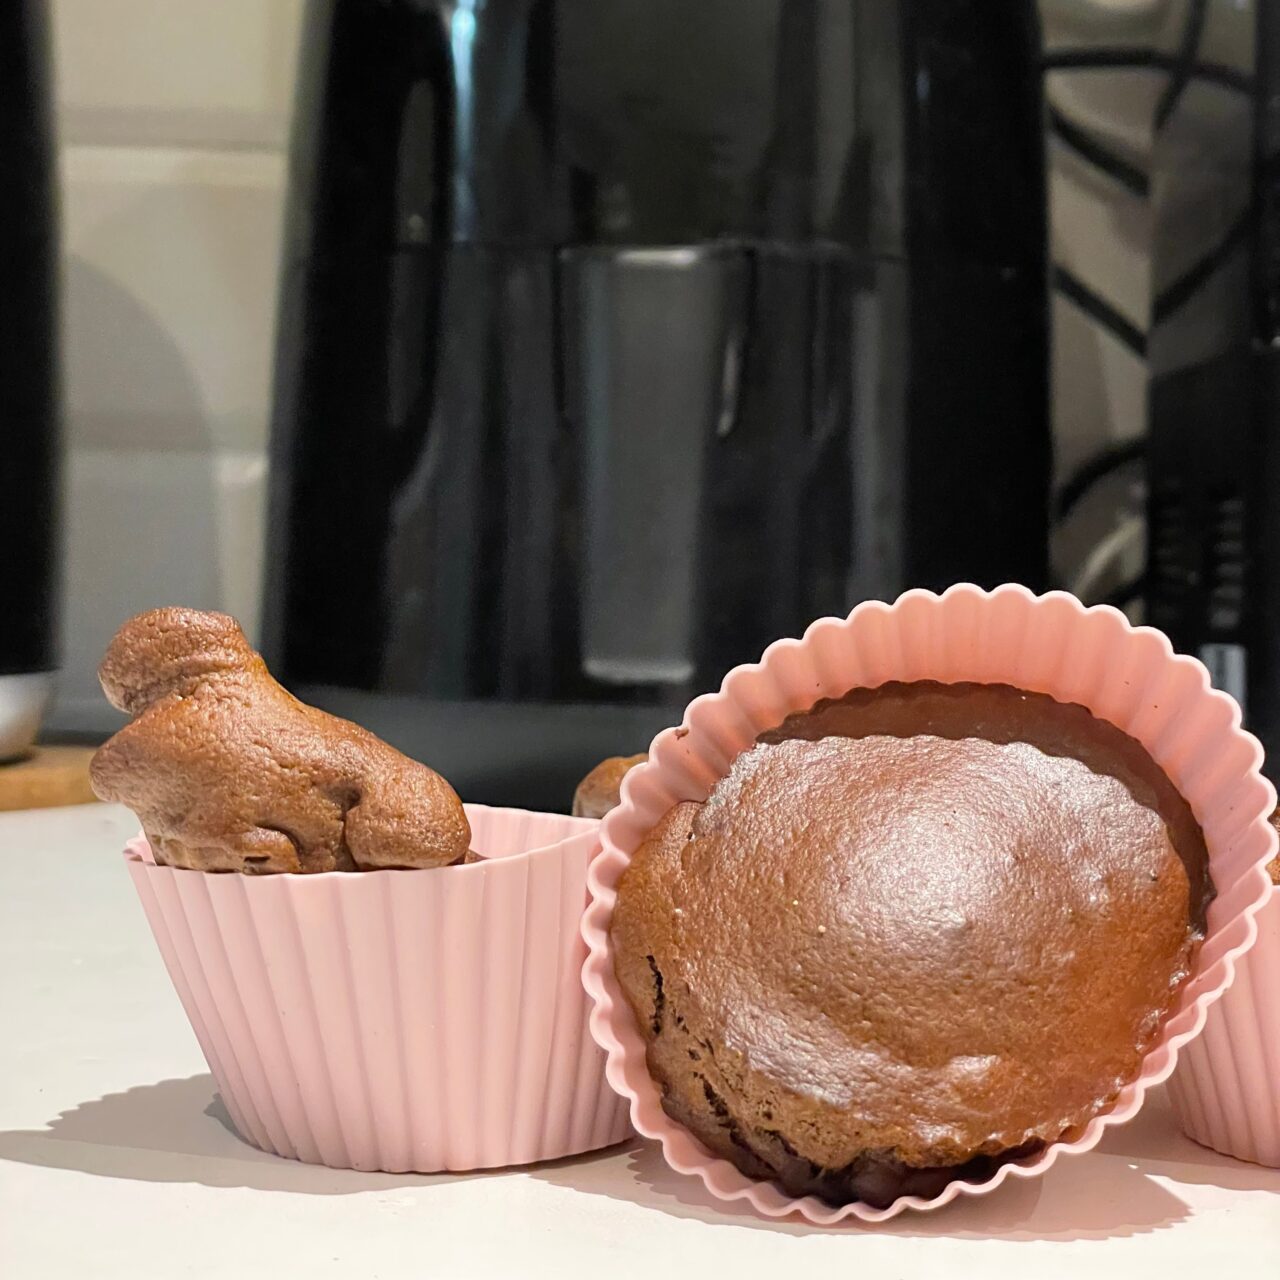 Ciasto w kształcie dinozaura w różowej foremce do muffinek i okrągły czekoladowy babeczek również w różowej foremce, umieszczone na blacie kuchennym na tle czarnej frytkownicy